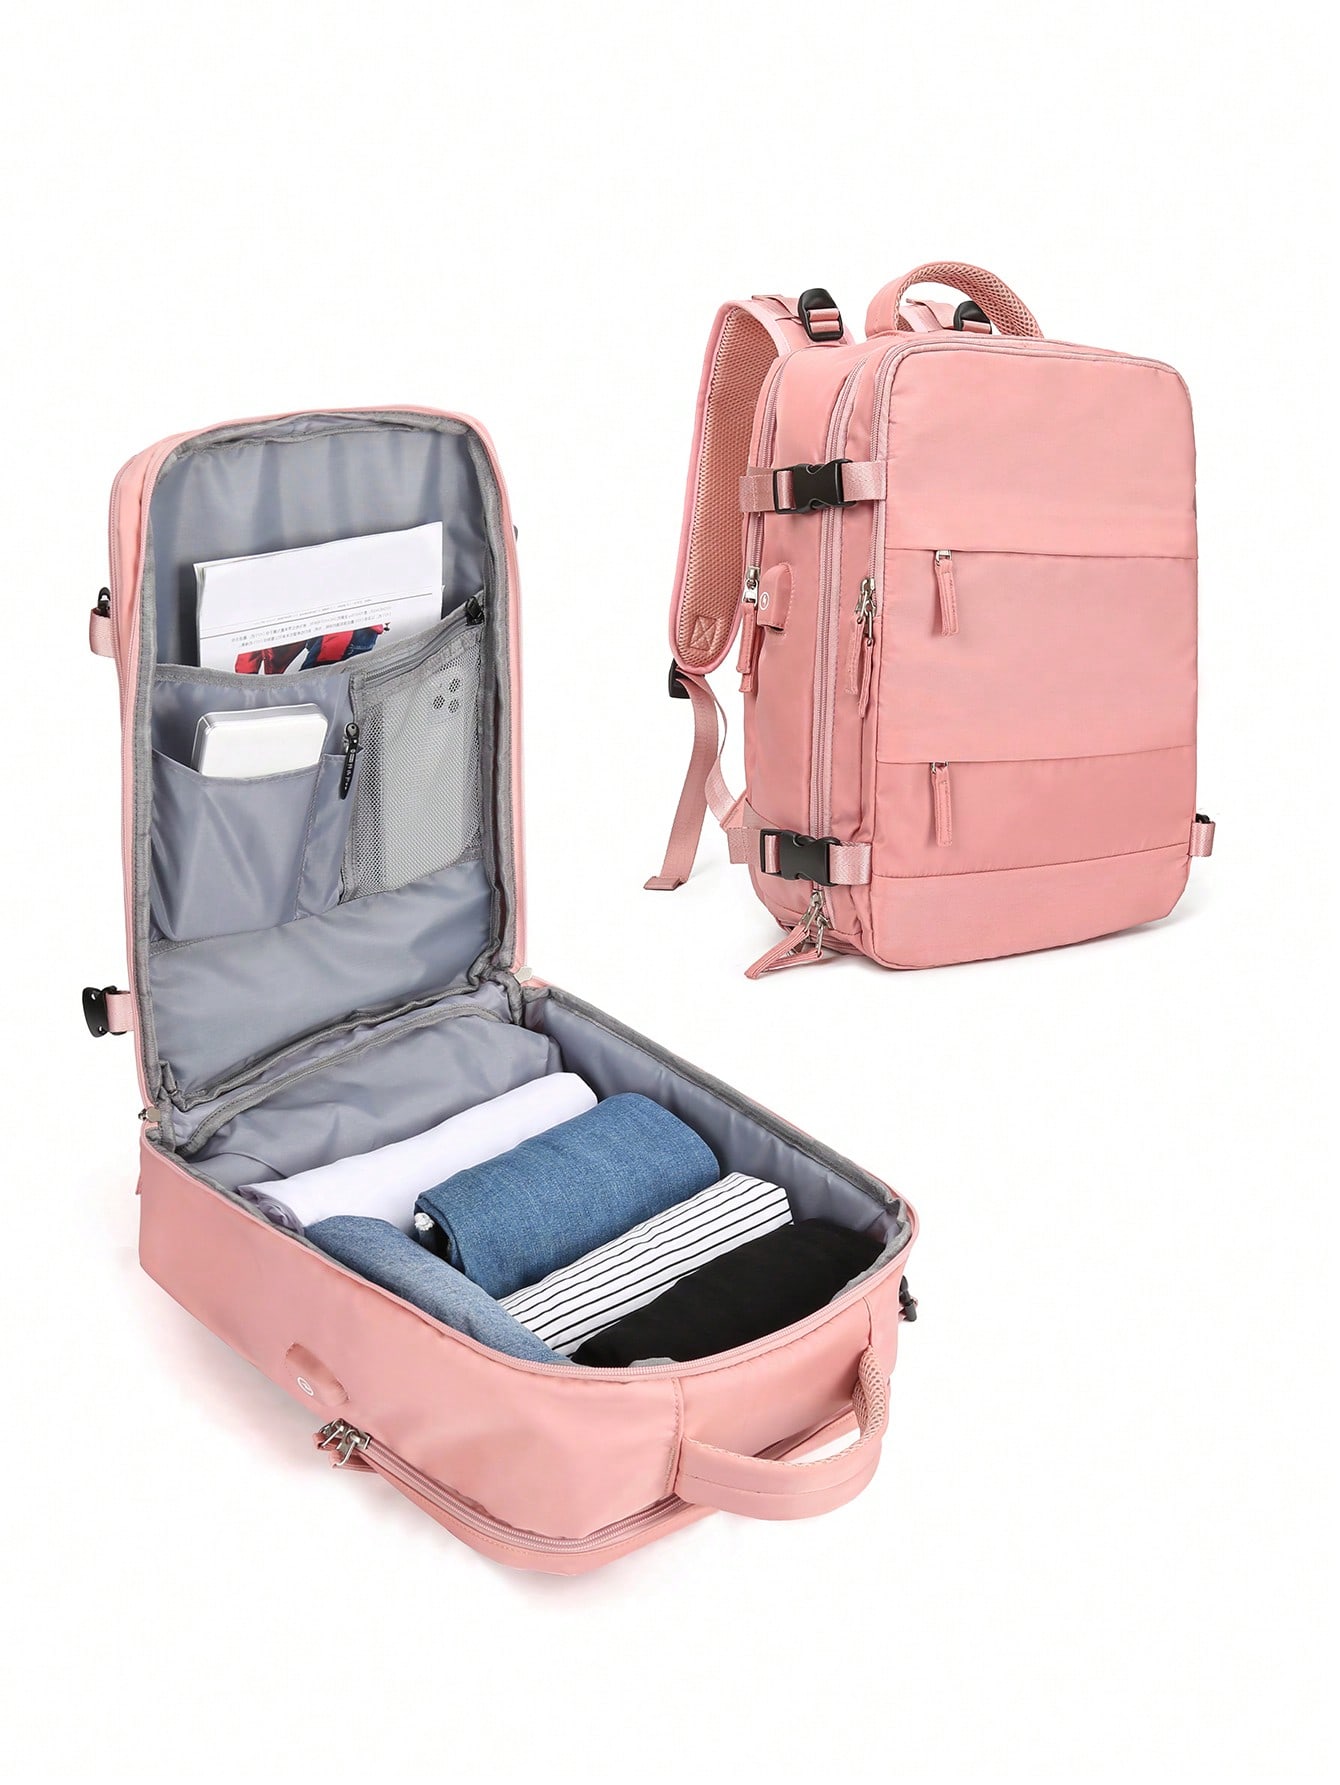 Женский дорожный рюкзак с USB-портом для зарядки, розовый женский рюкзак модная и элегантная сумка мягкий кожаный однотонный рюкзак на молнии удобная сумка для дам дизайнерский дорожный рюкзак